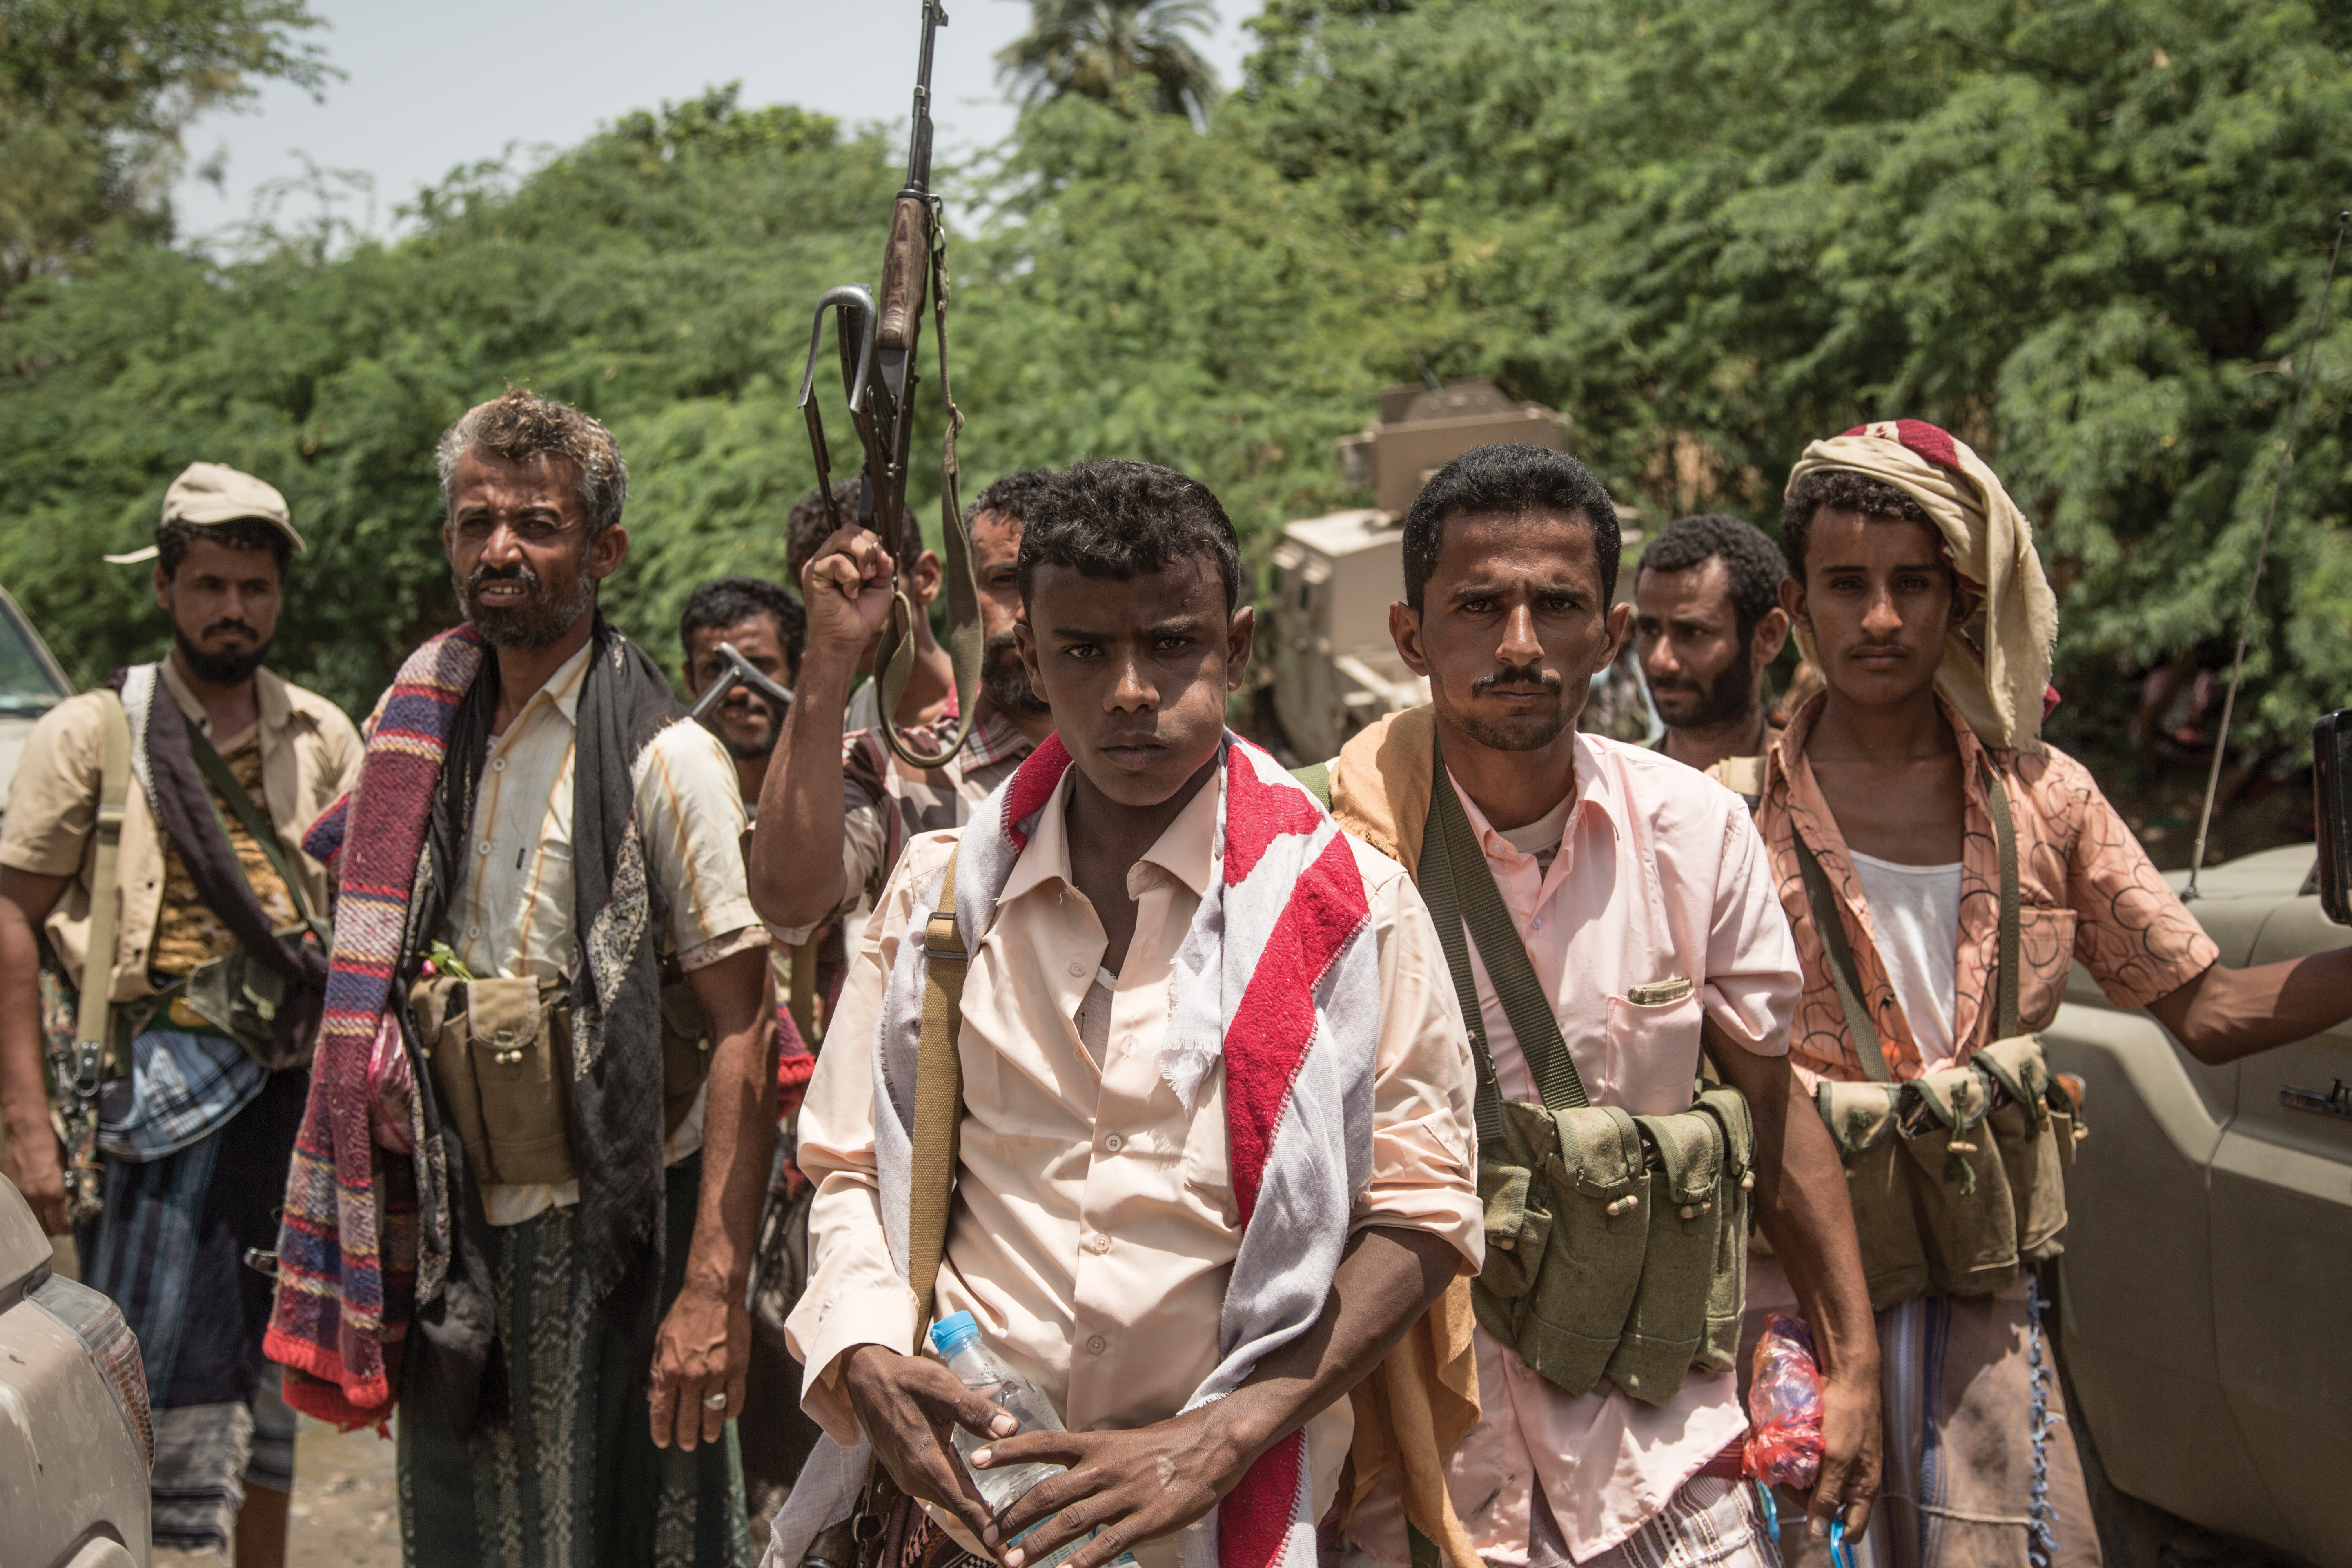 Unfinished War: A Journey through Civil War in Yemen